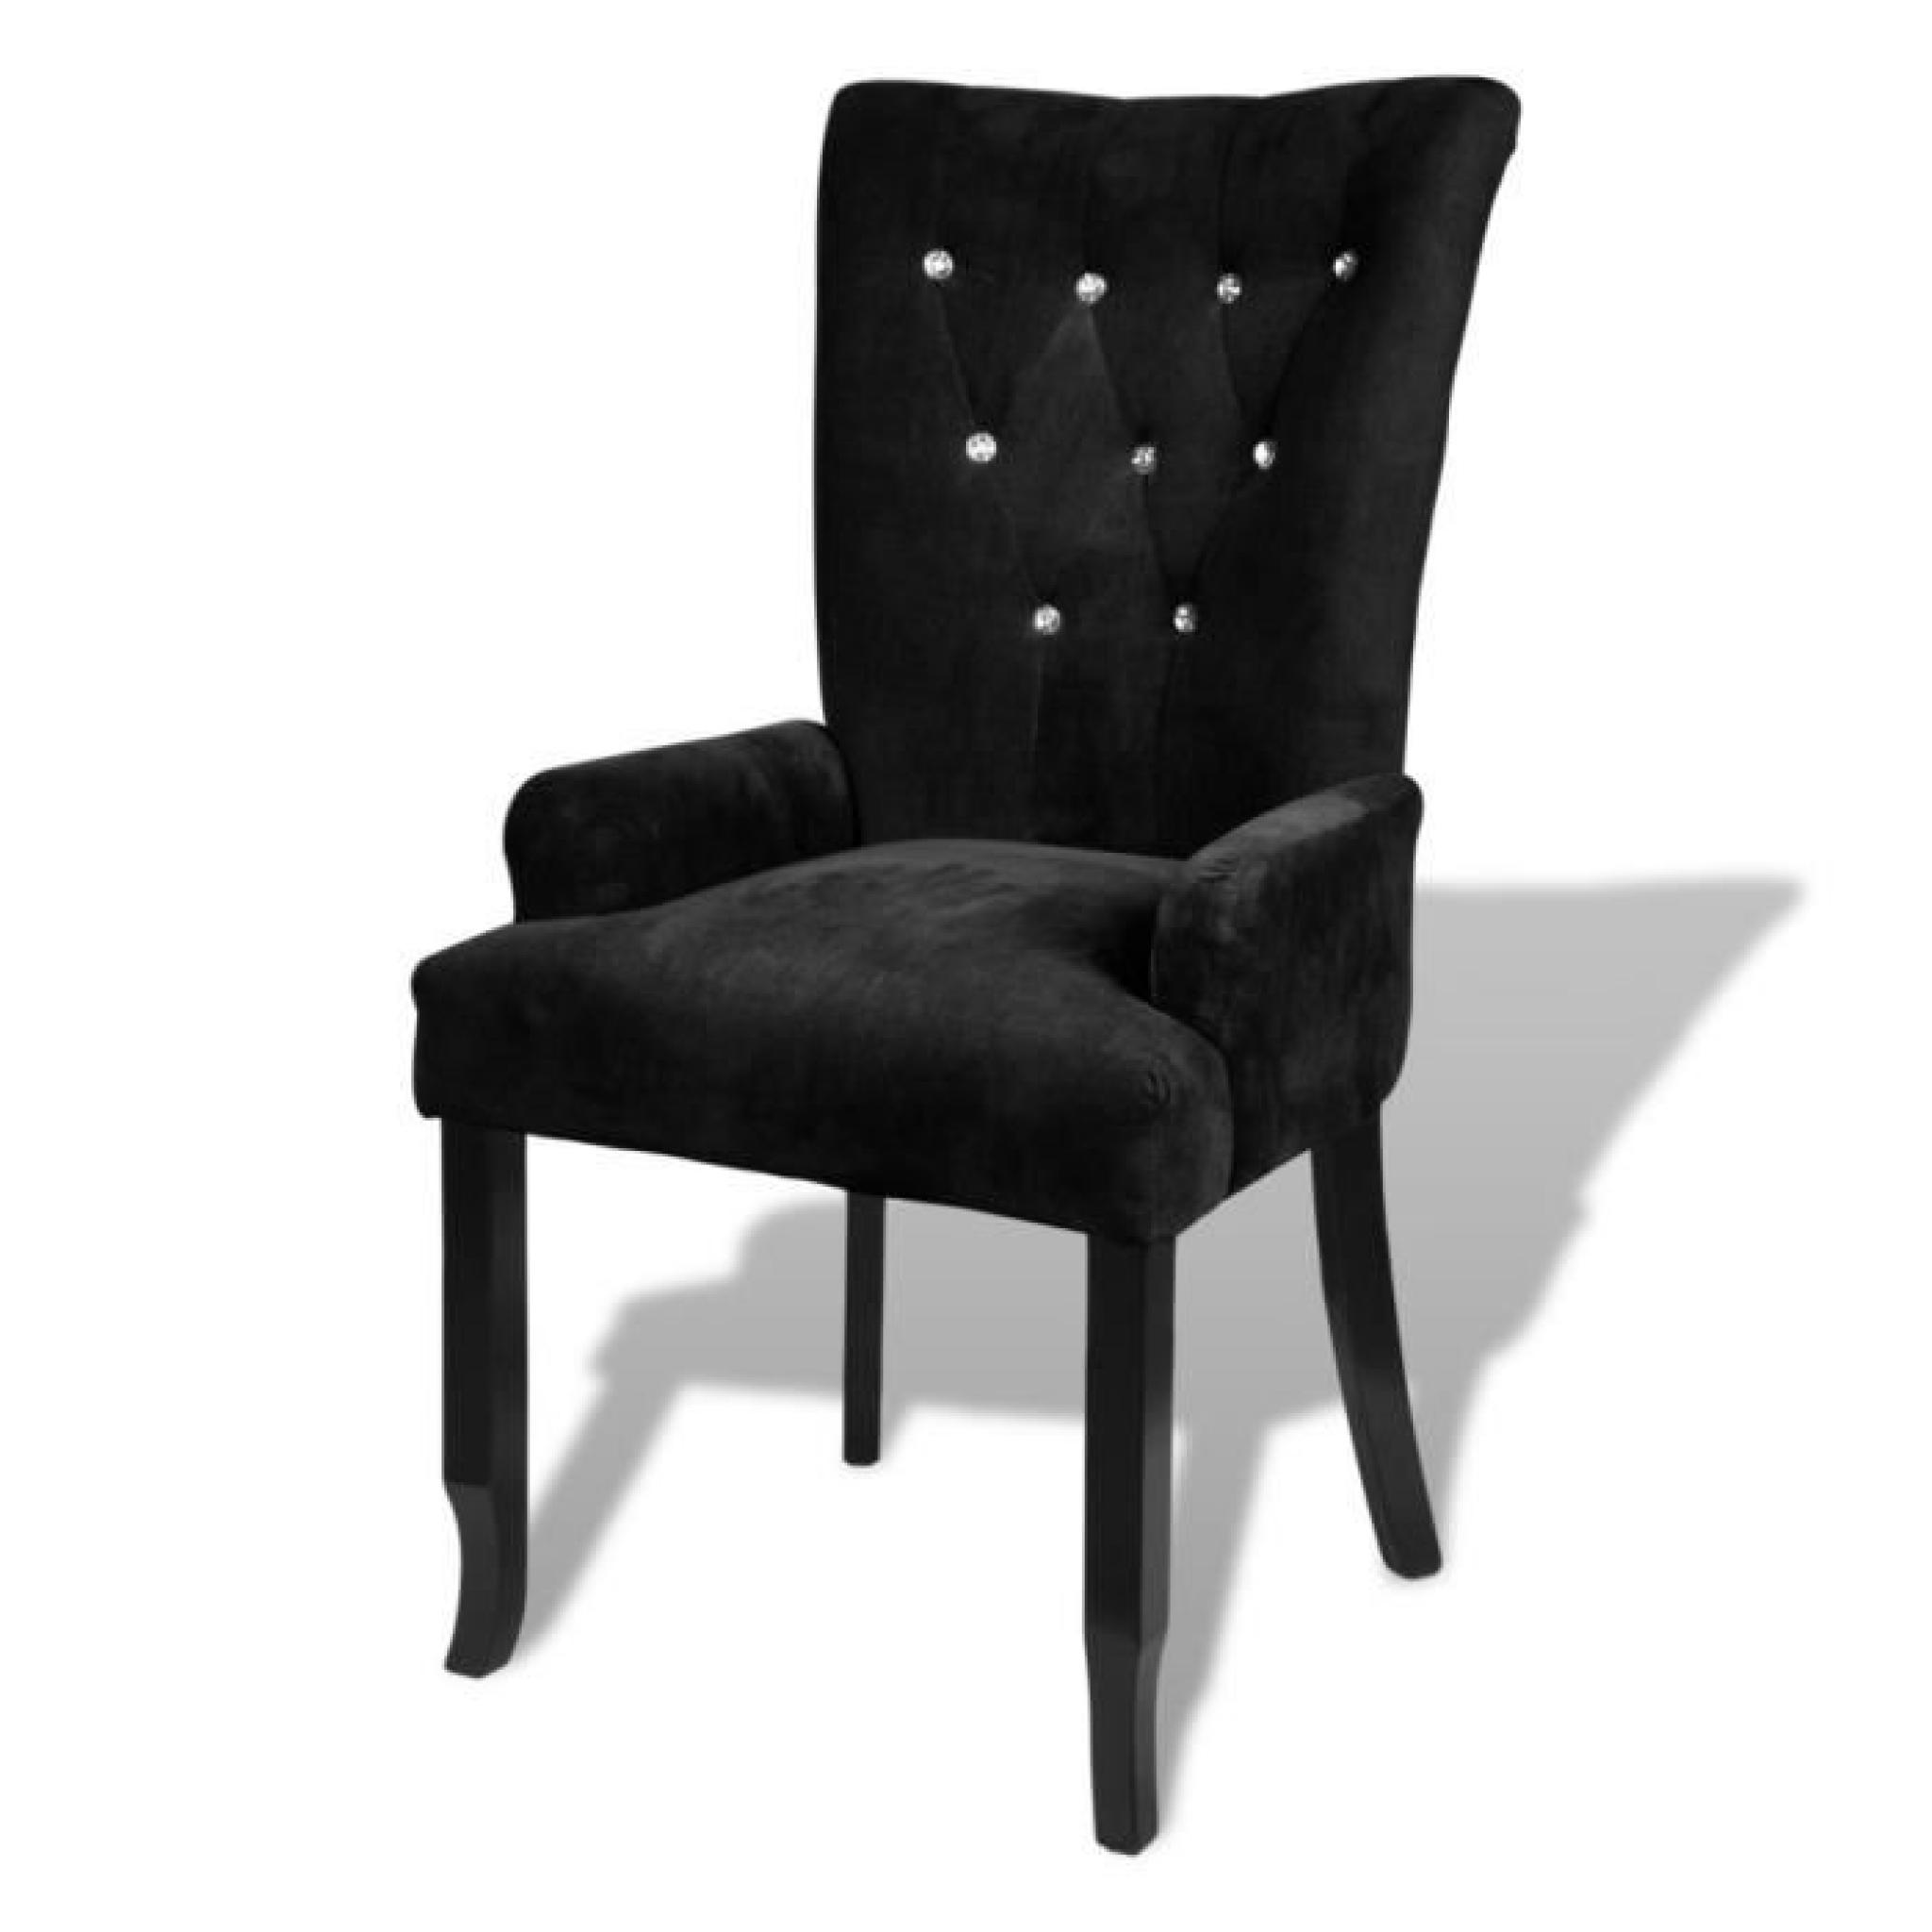 Magnifique Chaise capitonnee noir 54 x 56 x 106 cm